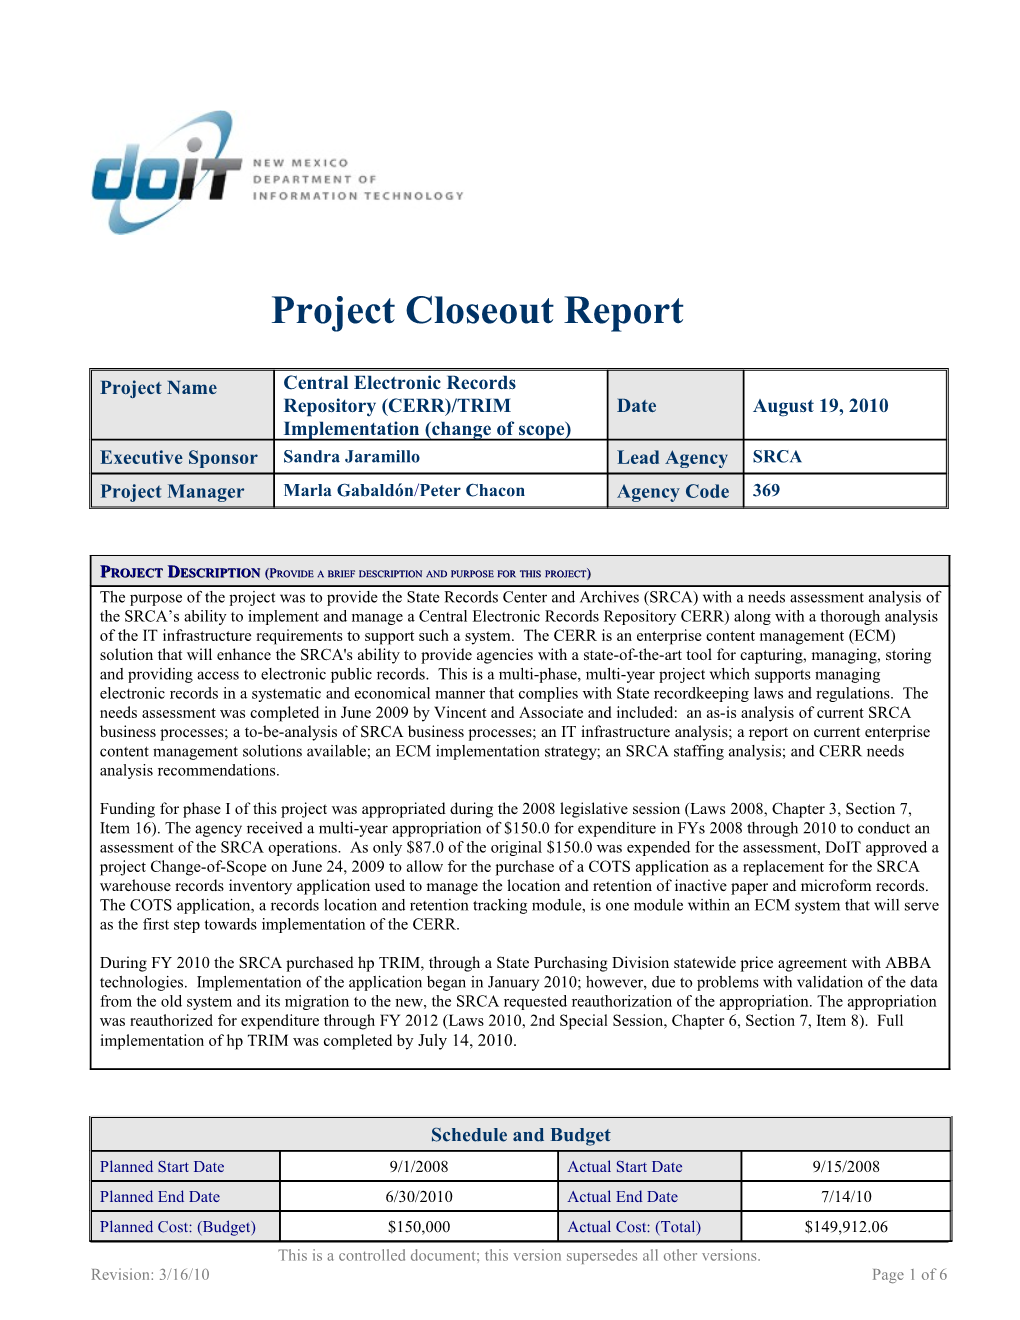 Project Closure Checklist